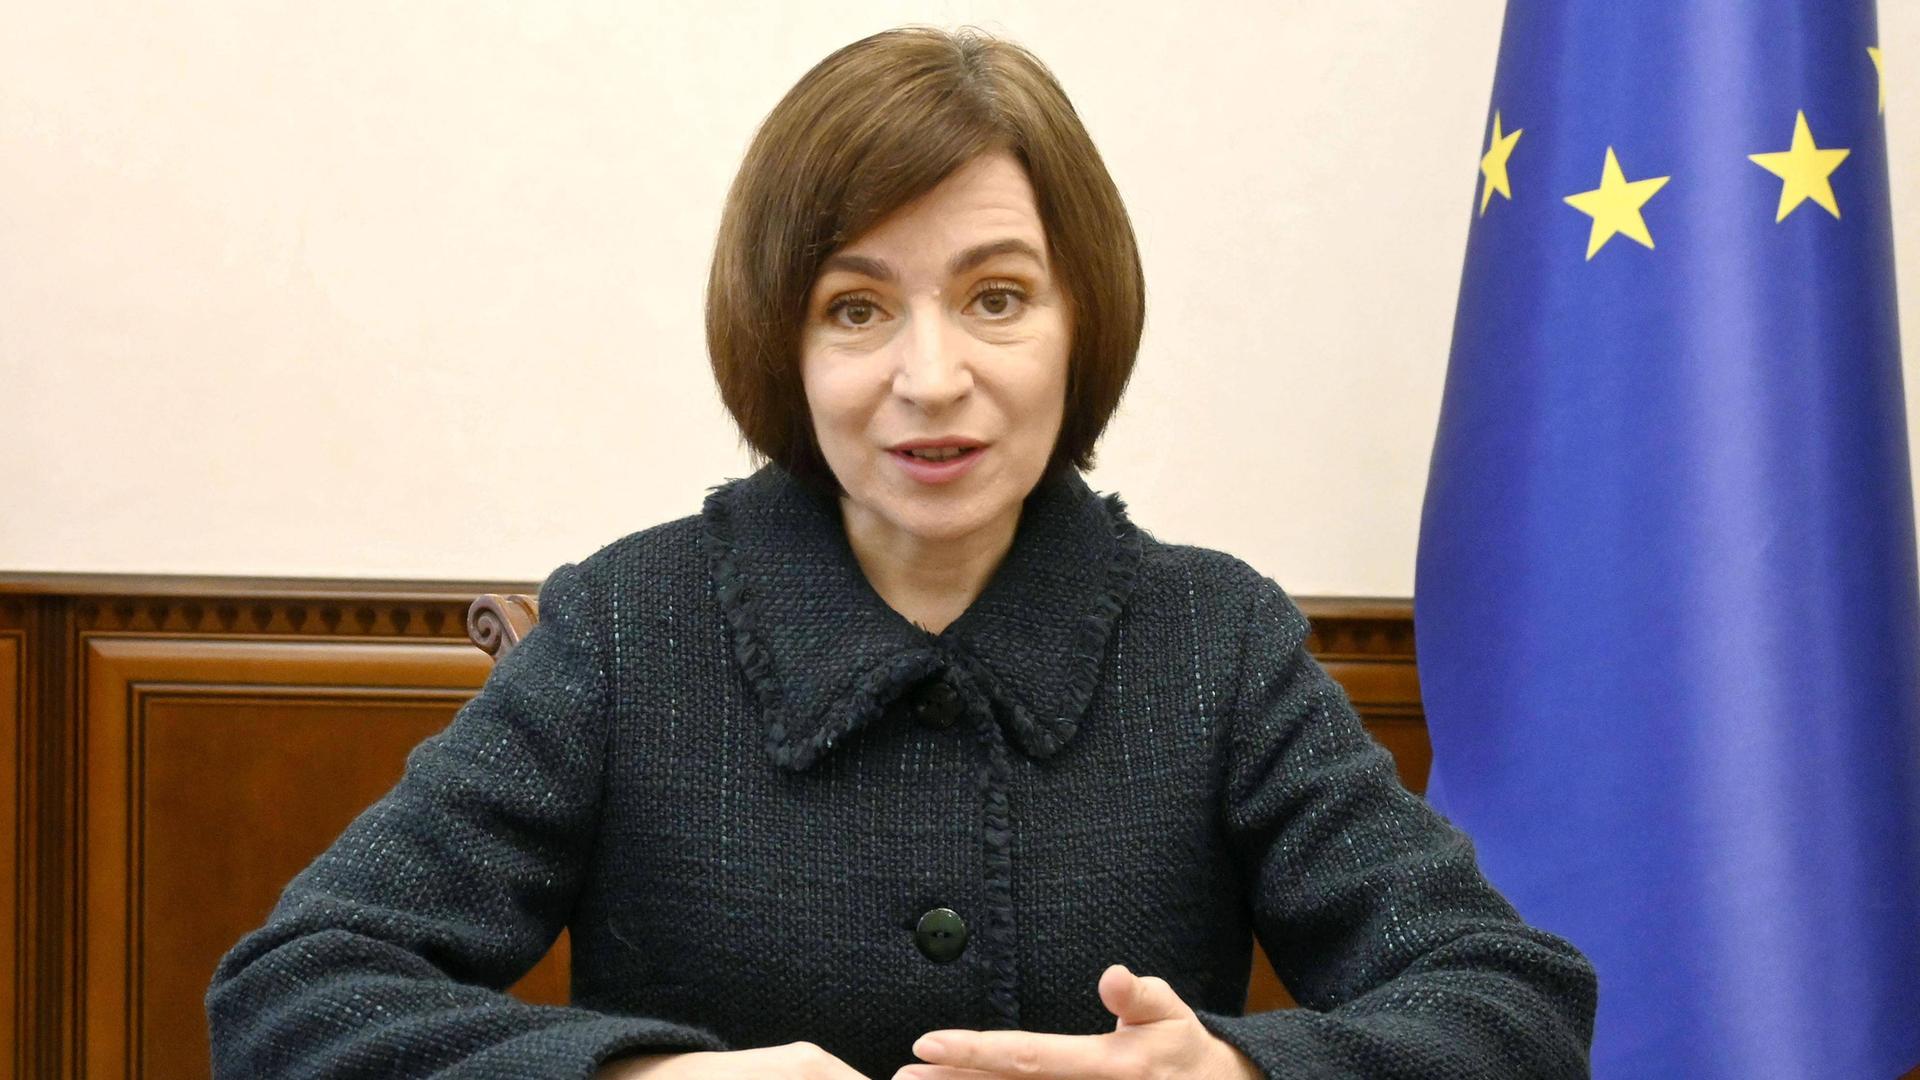 Maia Sandu, die Präsidentin Moldaus sitzt an einem Holztisch. Sie schaut in die Kamera. Ihre Hände liegen auf dem Tisch. Im Hintergrund sieht man angeschnitten eine EU-Flagge.